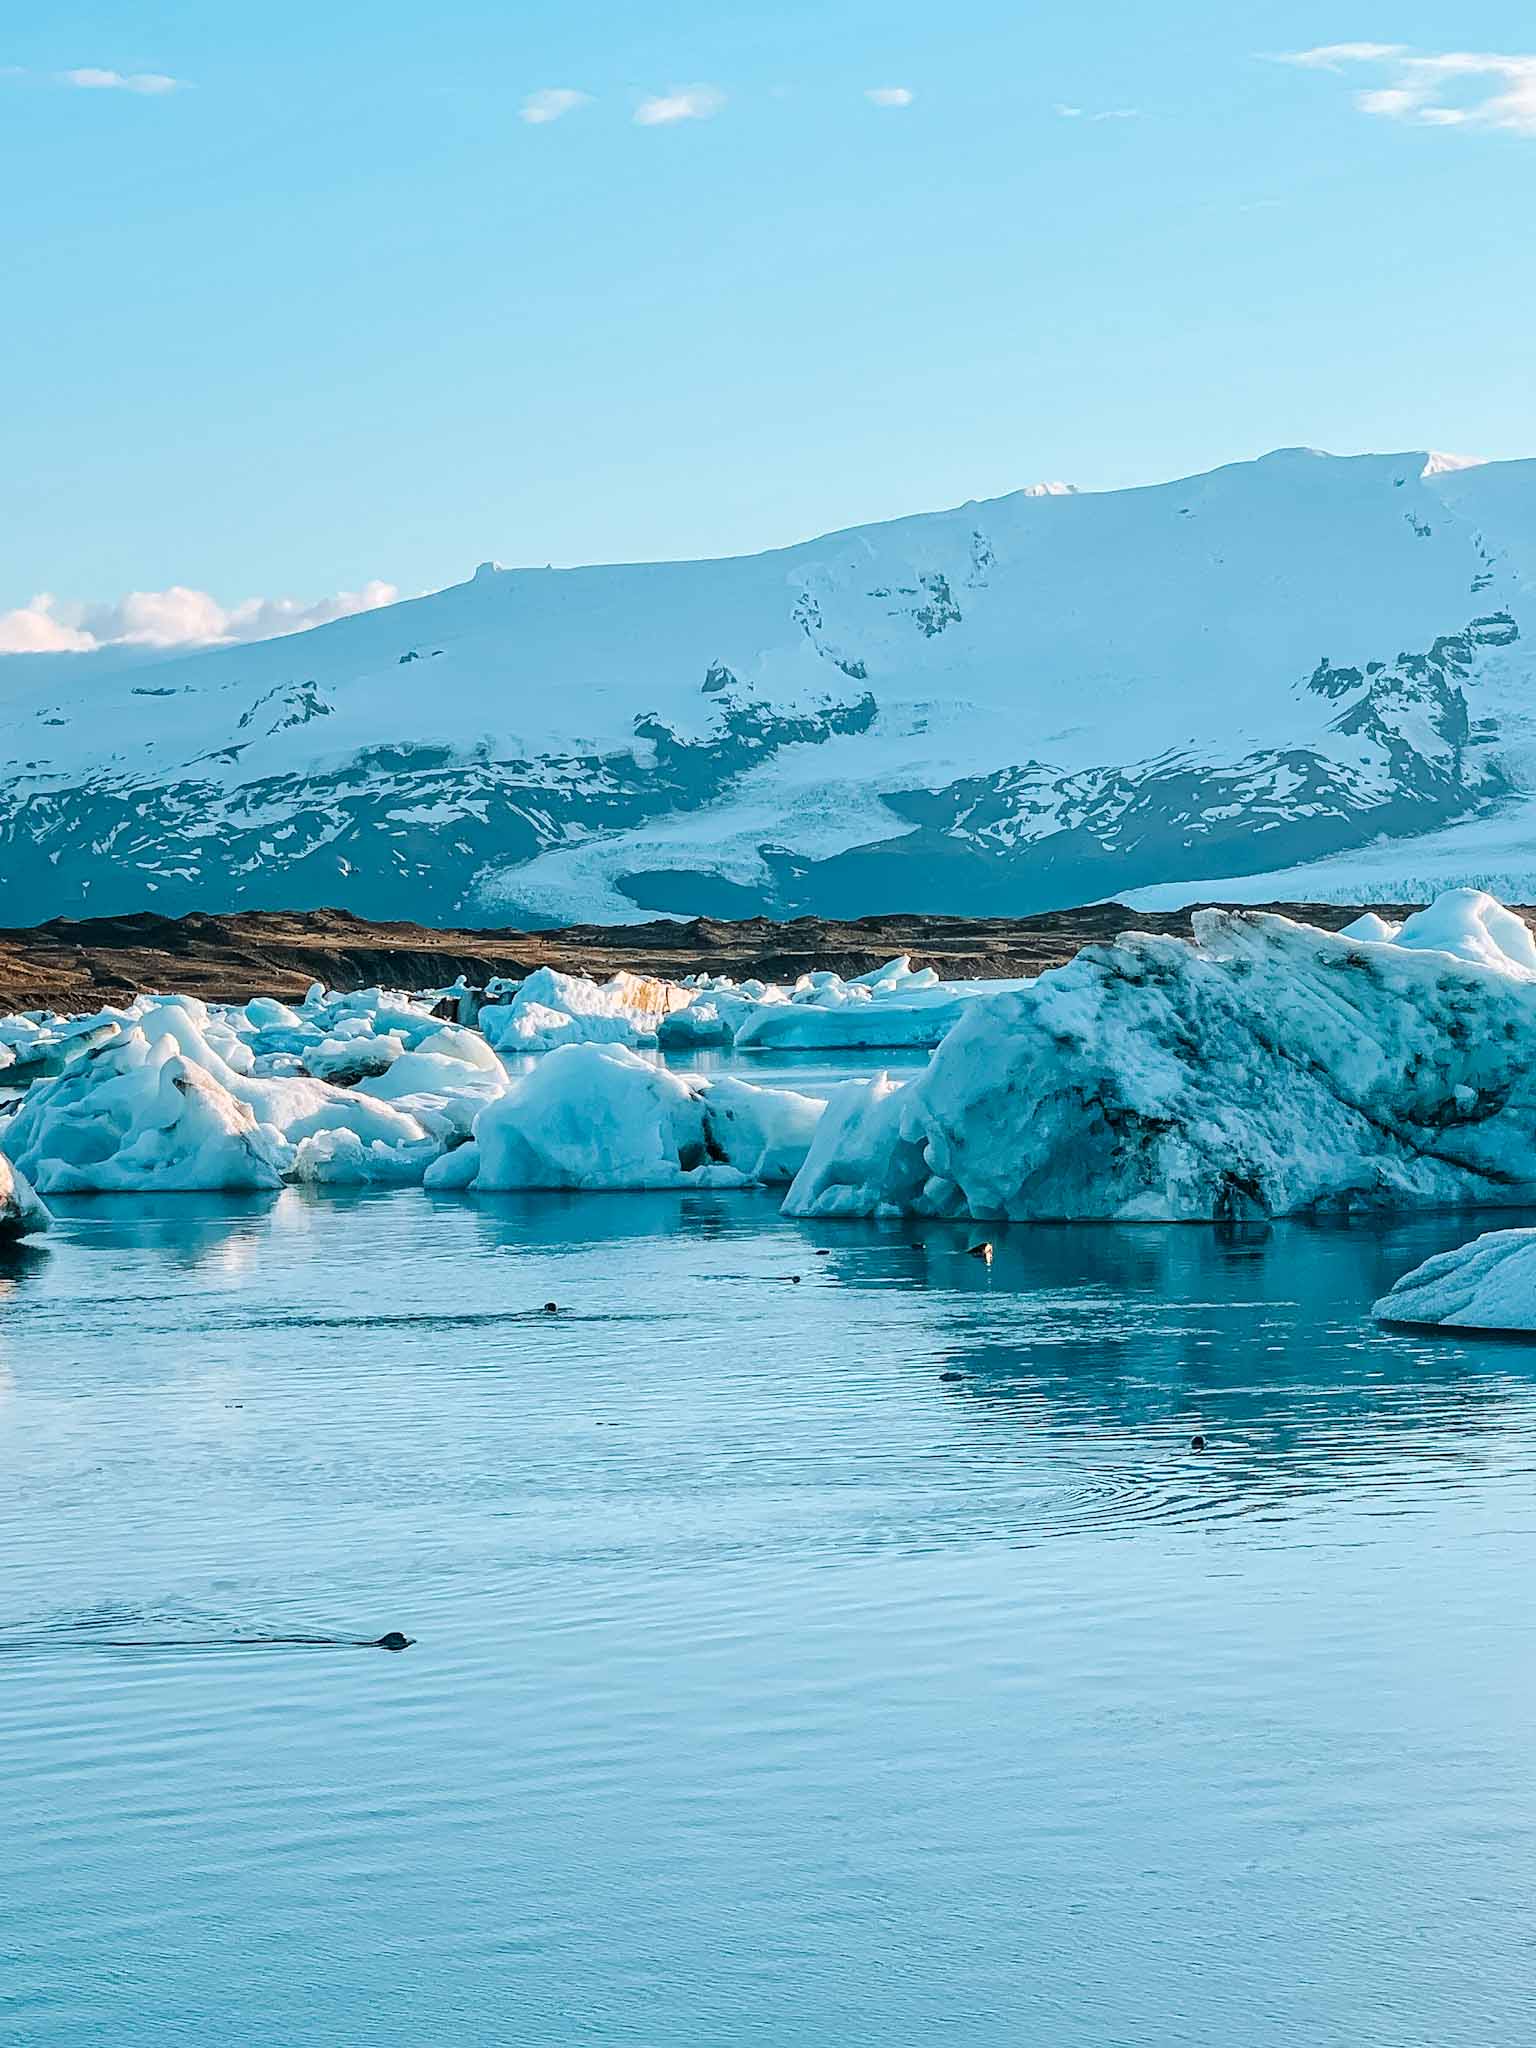 Glaciers in Iceland - Jökulsárlón glacier lagoon